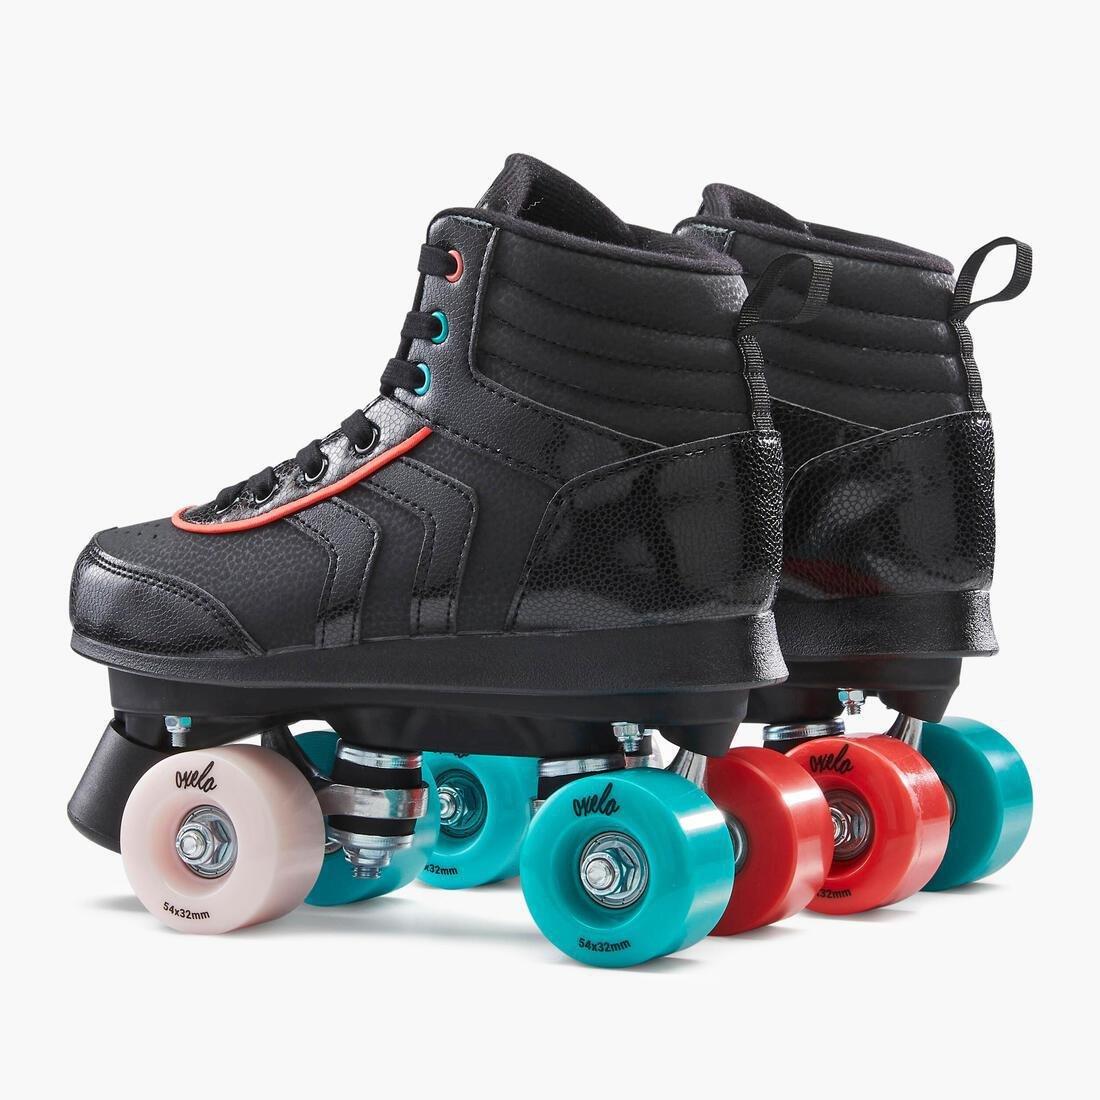 OXELO - 100 Jr Quad Roller Skates -  Holographic, Black